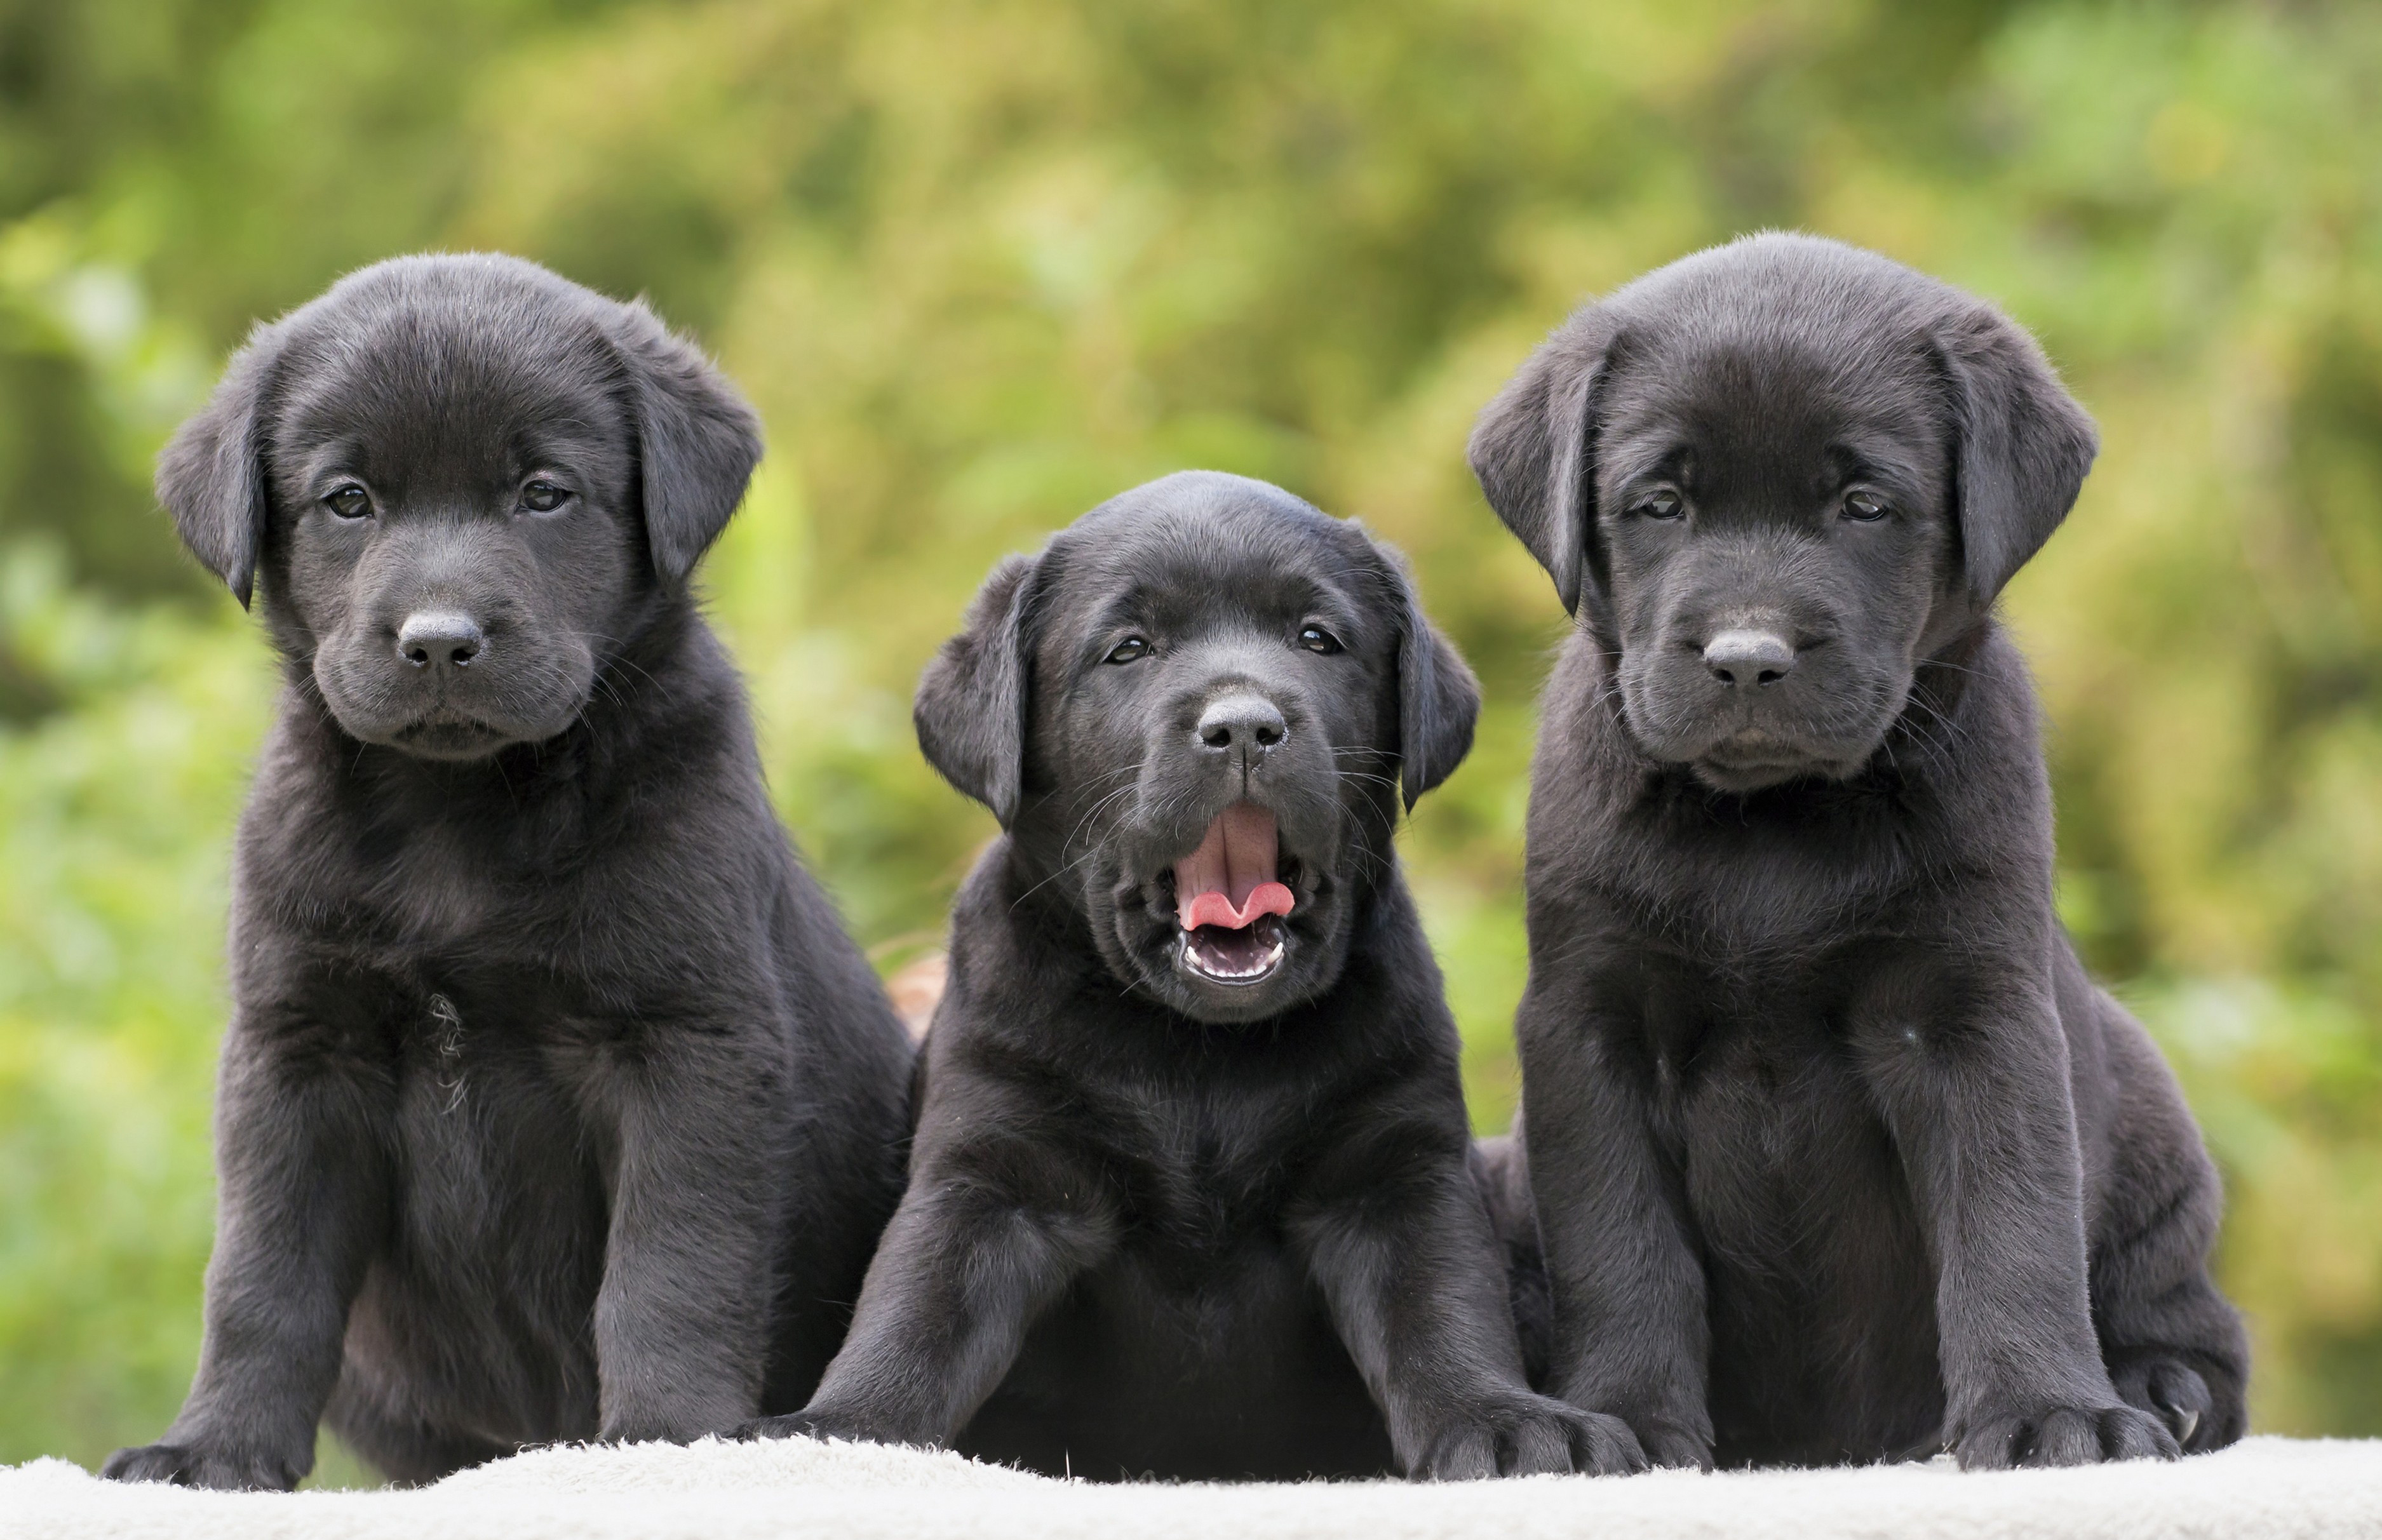 Cute Black Labrador Retriever's Puppies by Reddogs